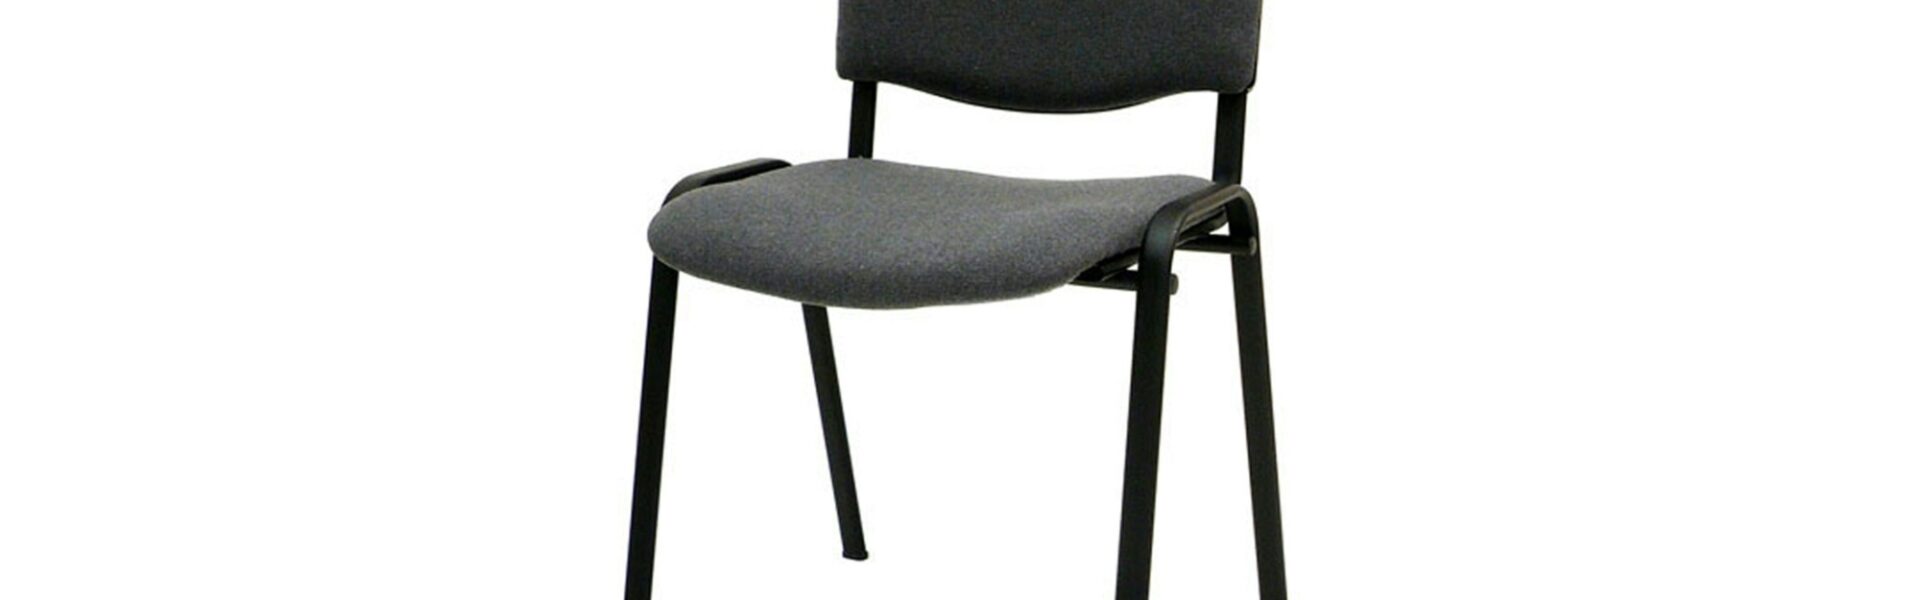 Sconto Konferenčná stolička ISO